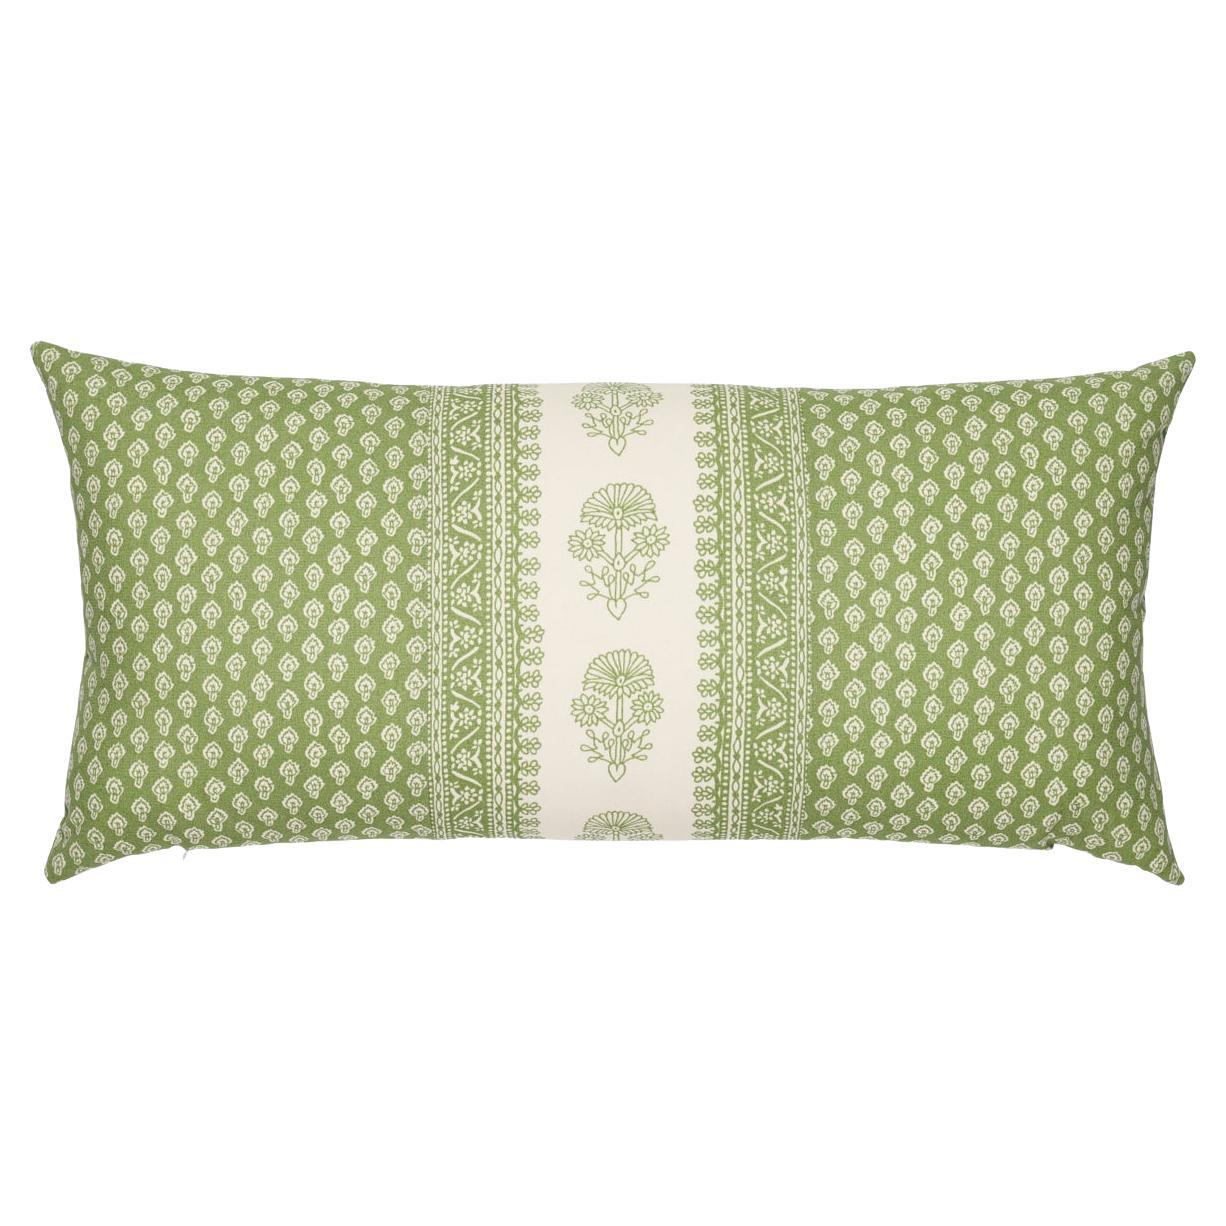 Schumacher Hyacinth I/O 30x14" Pillow in Leaf Green